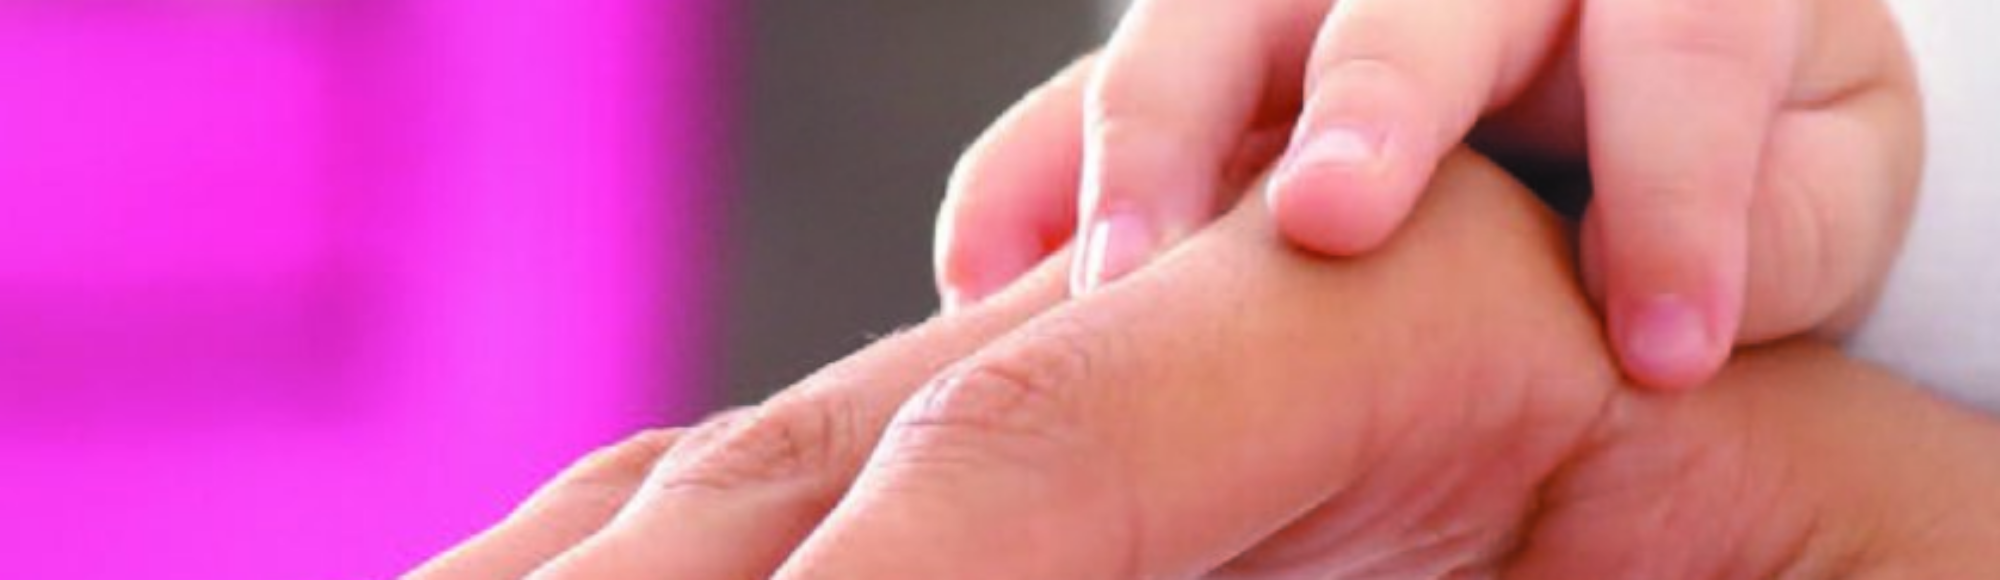 Main de bébé sur main d'adulte posée sur un pad